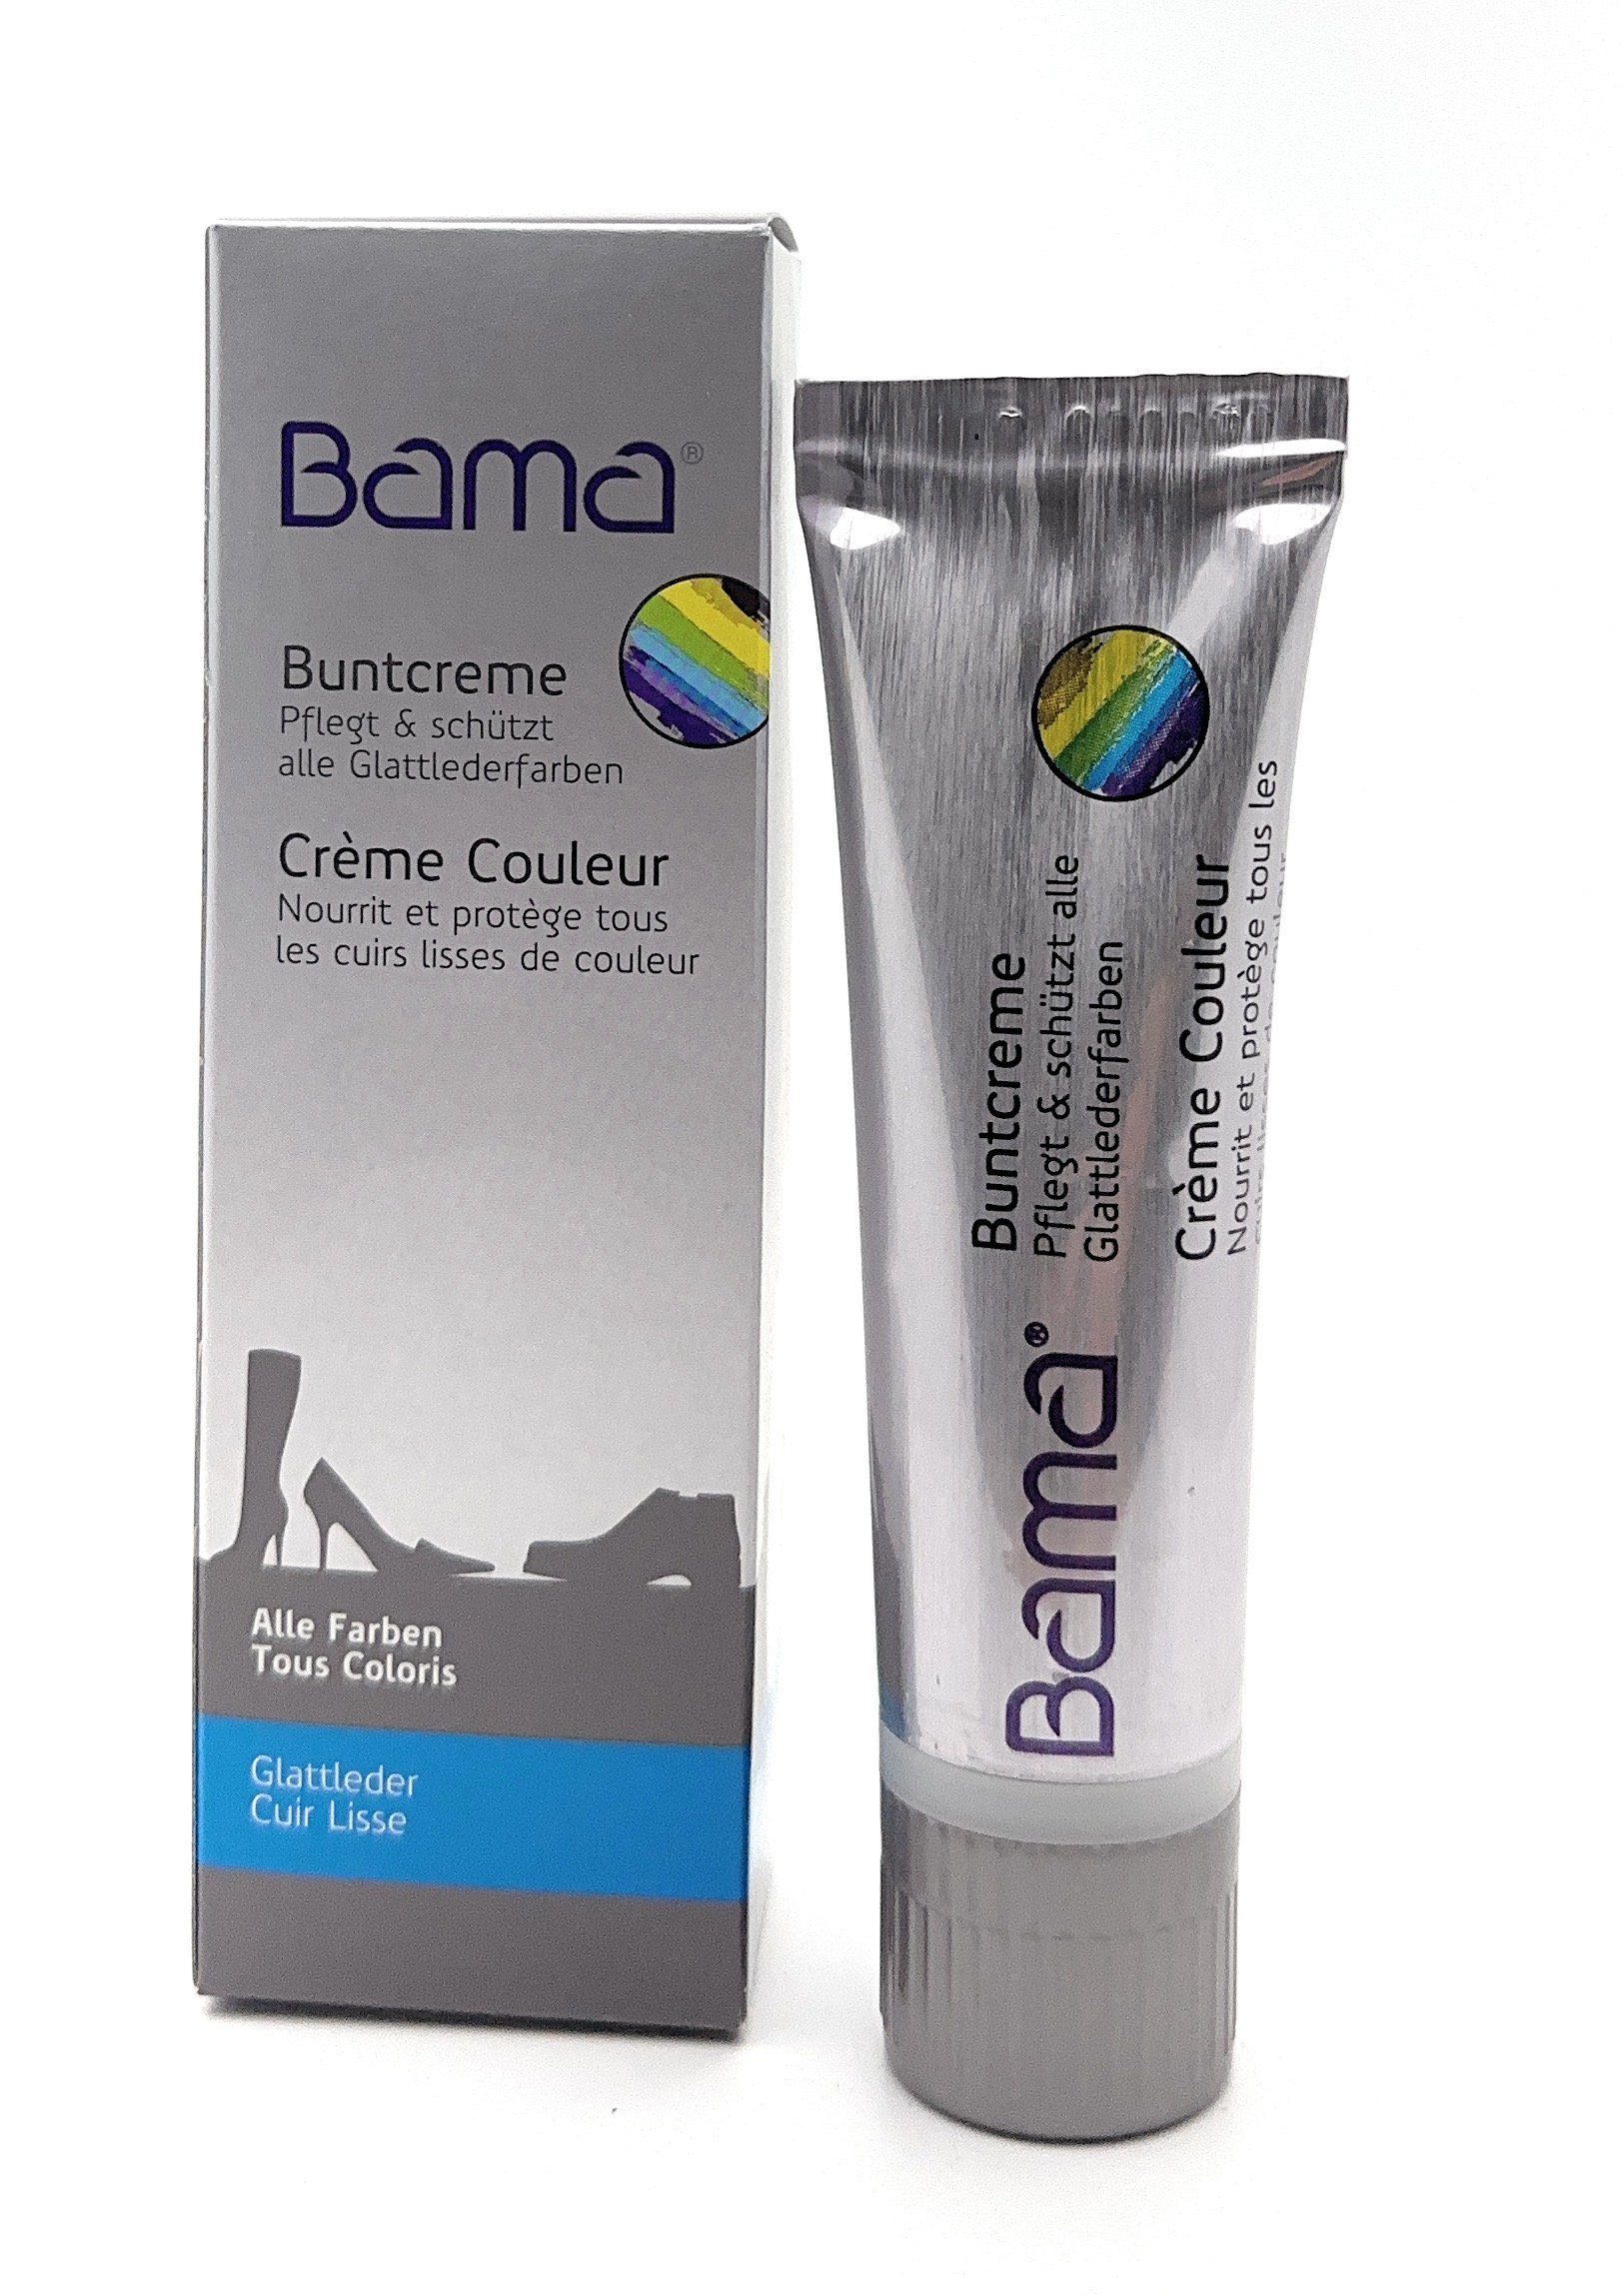 BAMA Group Bama Buntcreme, farblose Pflege für Glattleder und mehr, 50 ml Schuhcreme